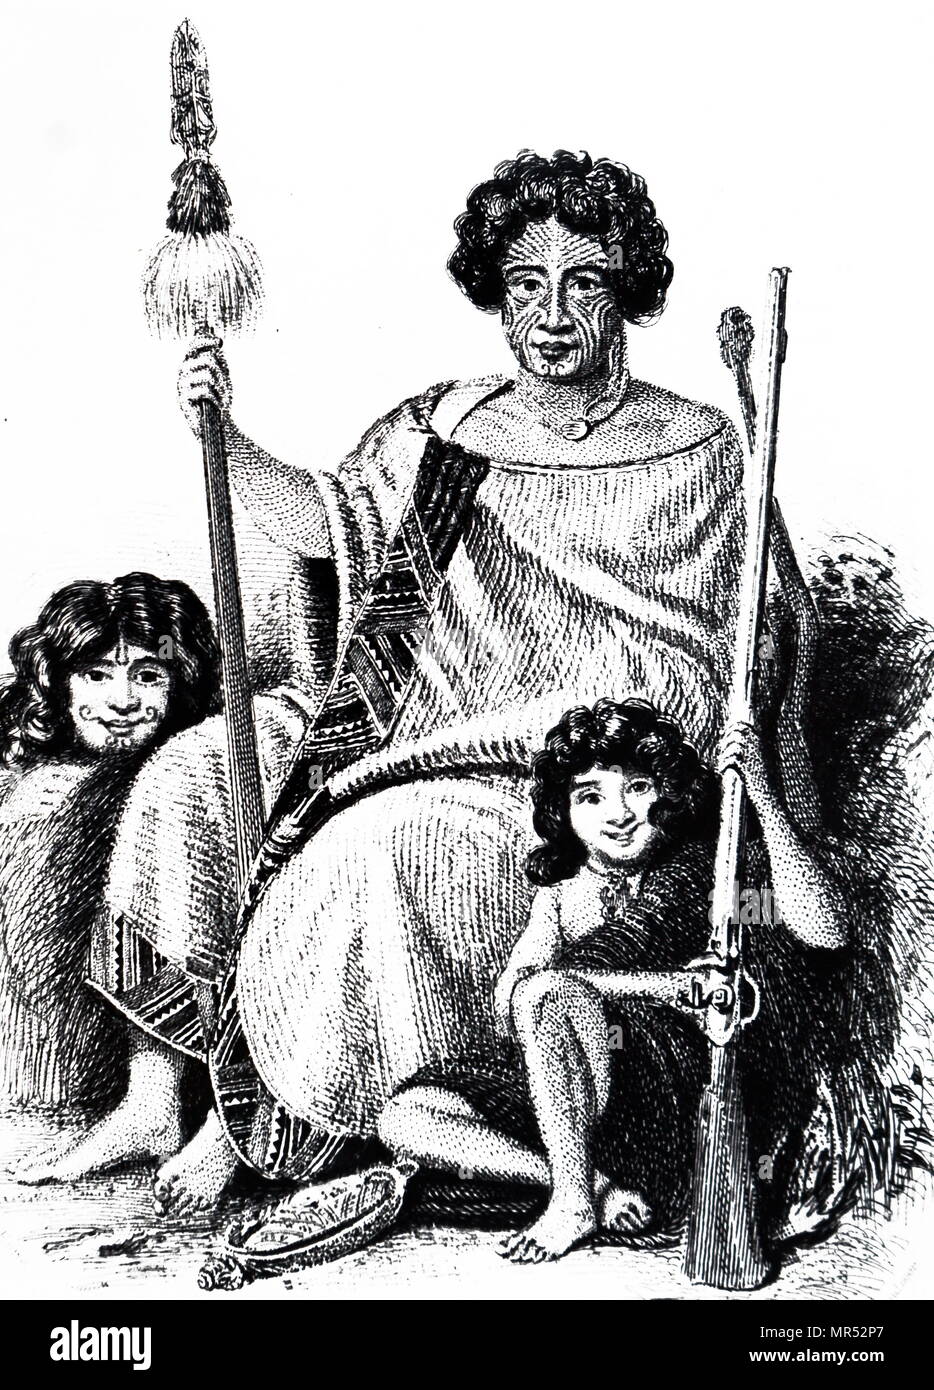 Kupferstich mit der Darstellung eines Maori Häuptling. Vom 19. Jahrhundert Stockfoto